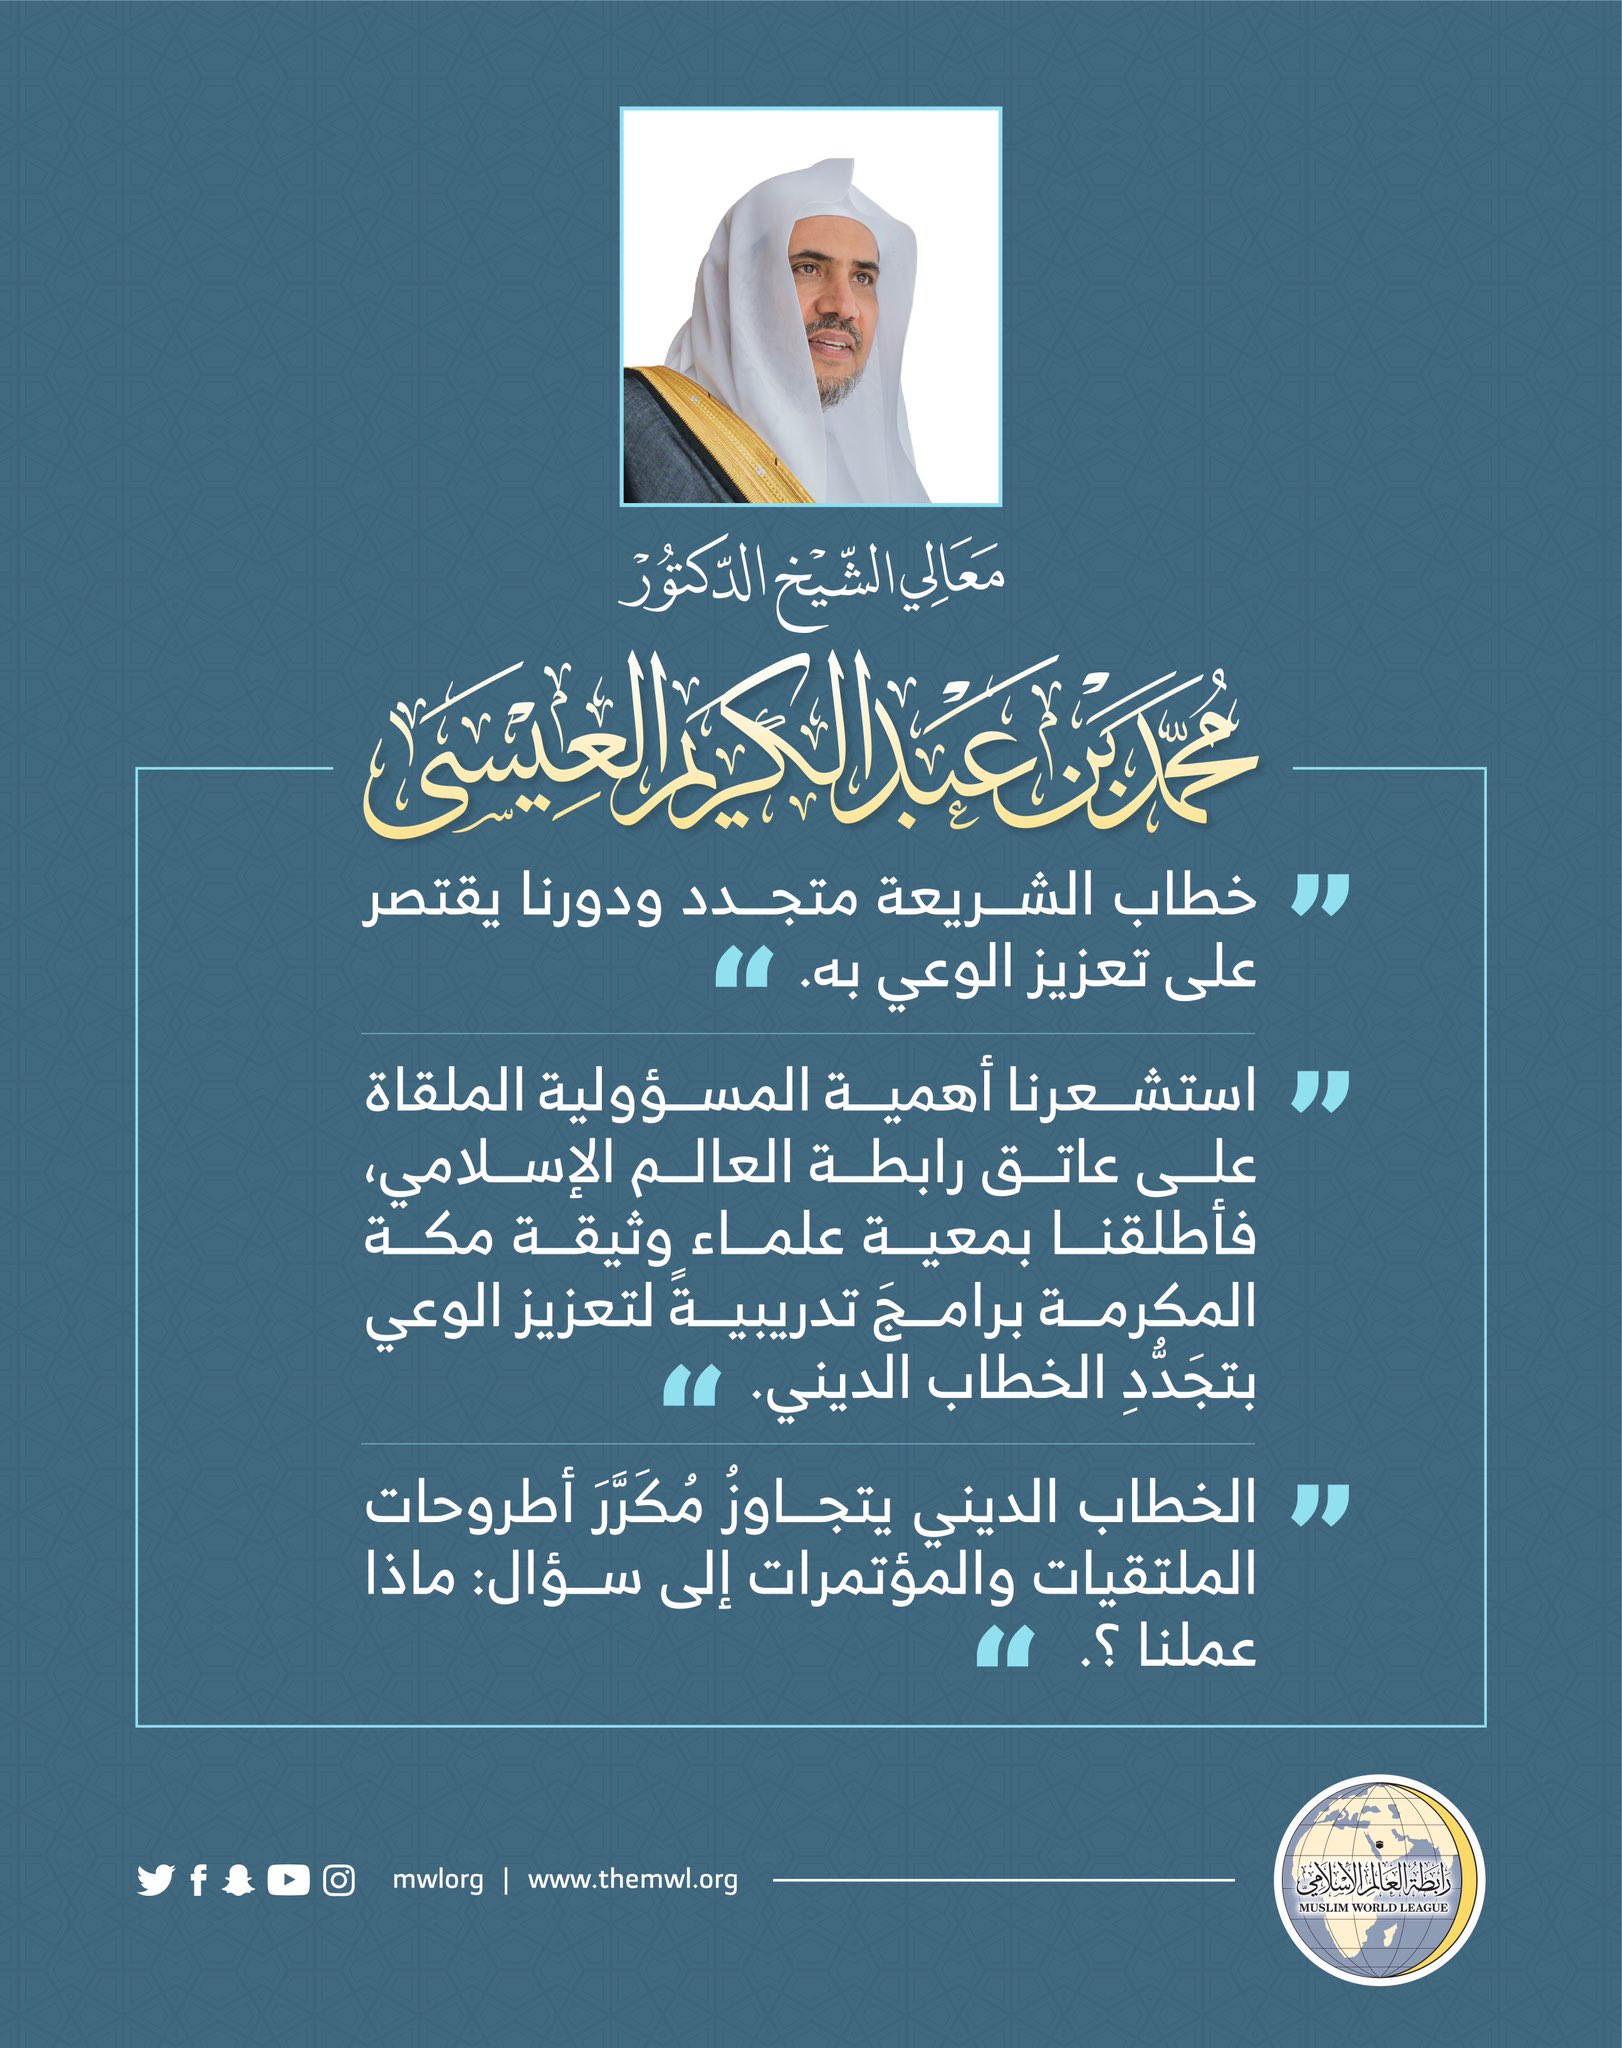 معالي الشيخ د. محمد العيسى متحدثاً عن ( الخطاب الديني في وثيقة مكة المكرمة ) بمناسبة تدشين جائزة الوثيقة :